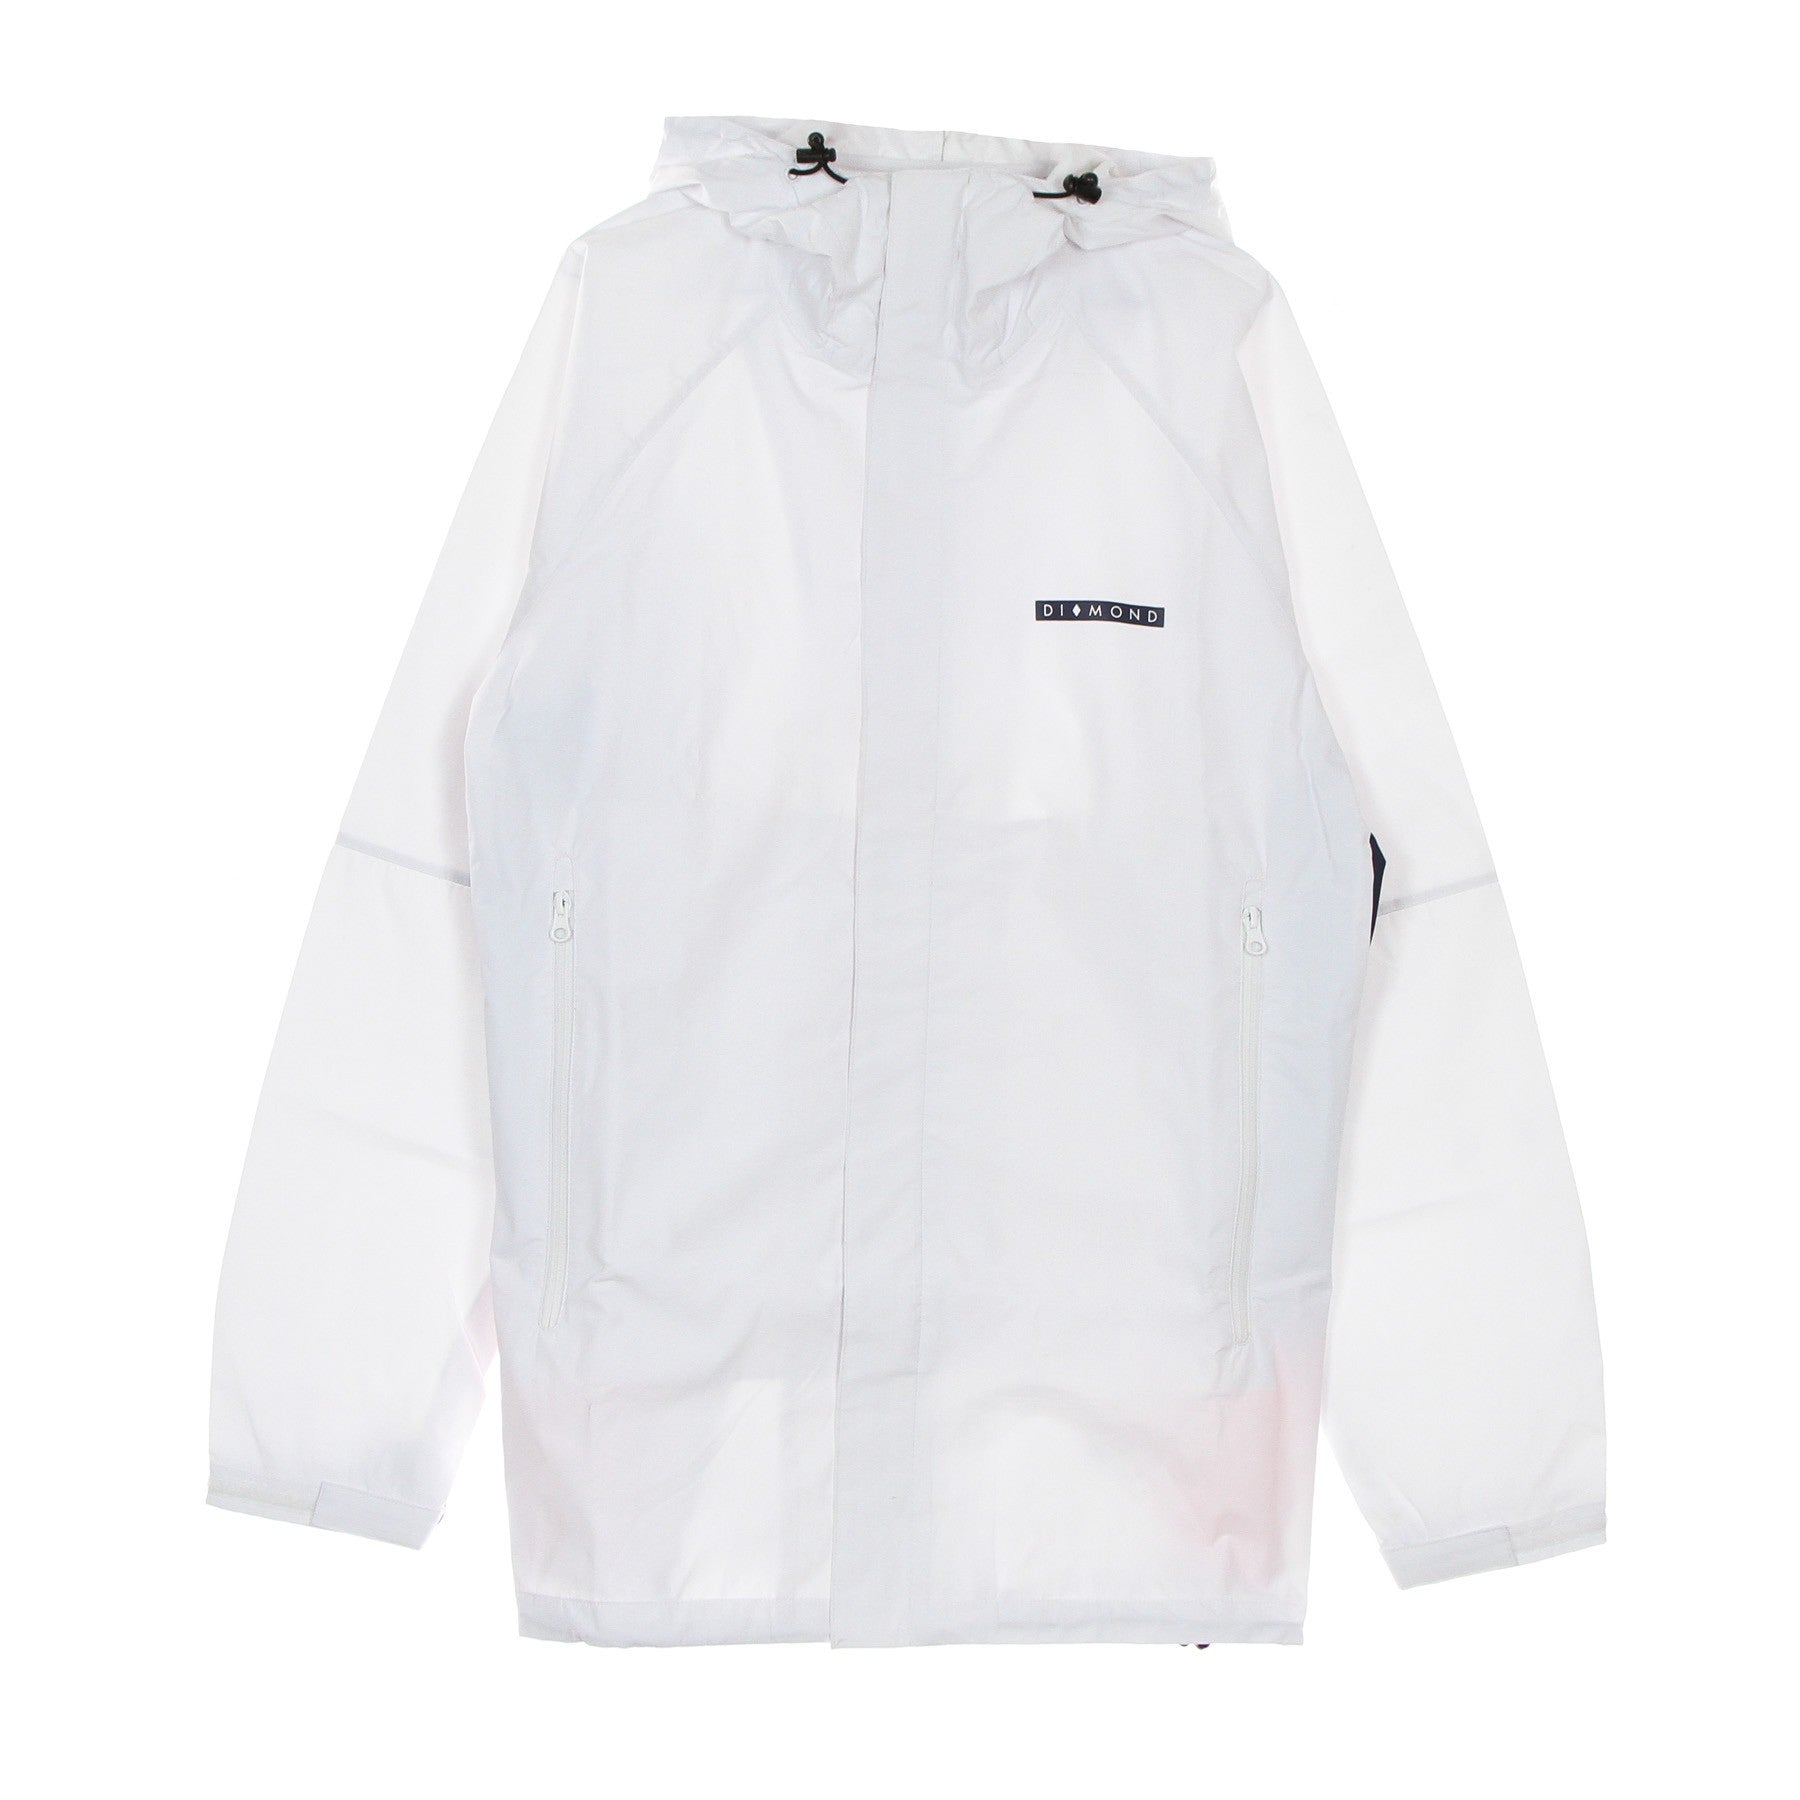 Diamond Supply, Giubbotto Uomo Fordham Storm Jacket, White